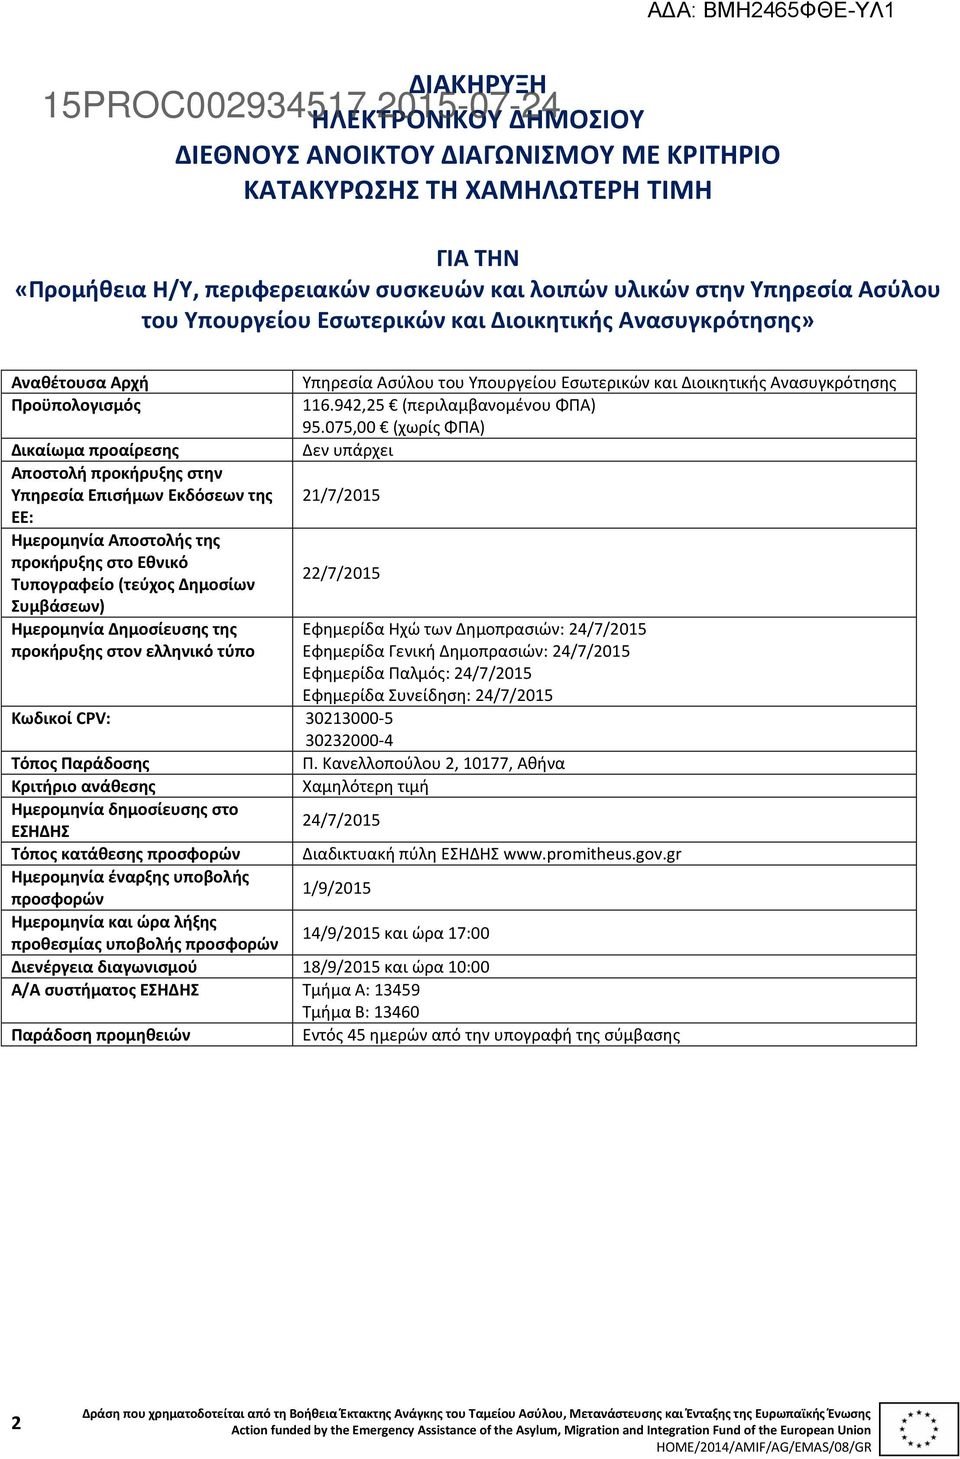 προκήρυξης στο Εθνικό Τυπογραφείο (τεύχος Δημοσίων Συμβάσεων) Ημερομηνία Δημοσίευσης της προκήρυξης στον ελληνικό τύπο Υπηρεσία Ασύλου του Υπουργείου Εσωτερικών και Διοικητικής Ανασυγκρότησης 116.